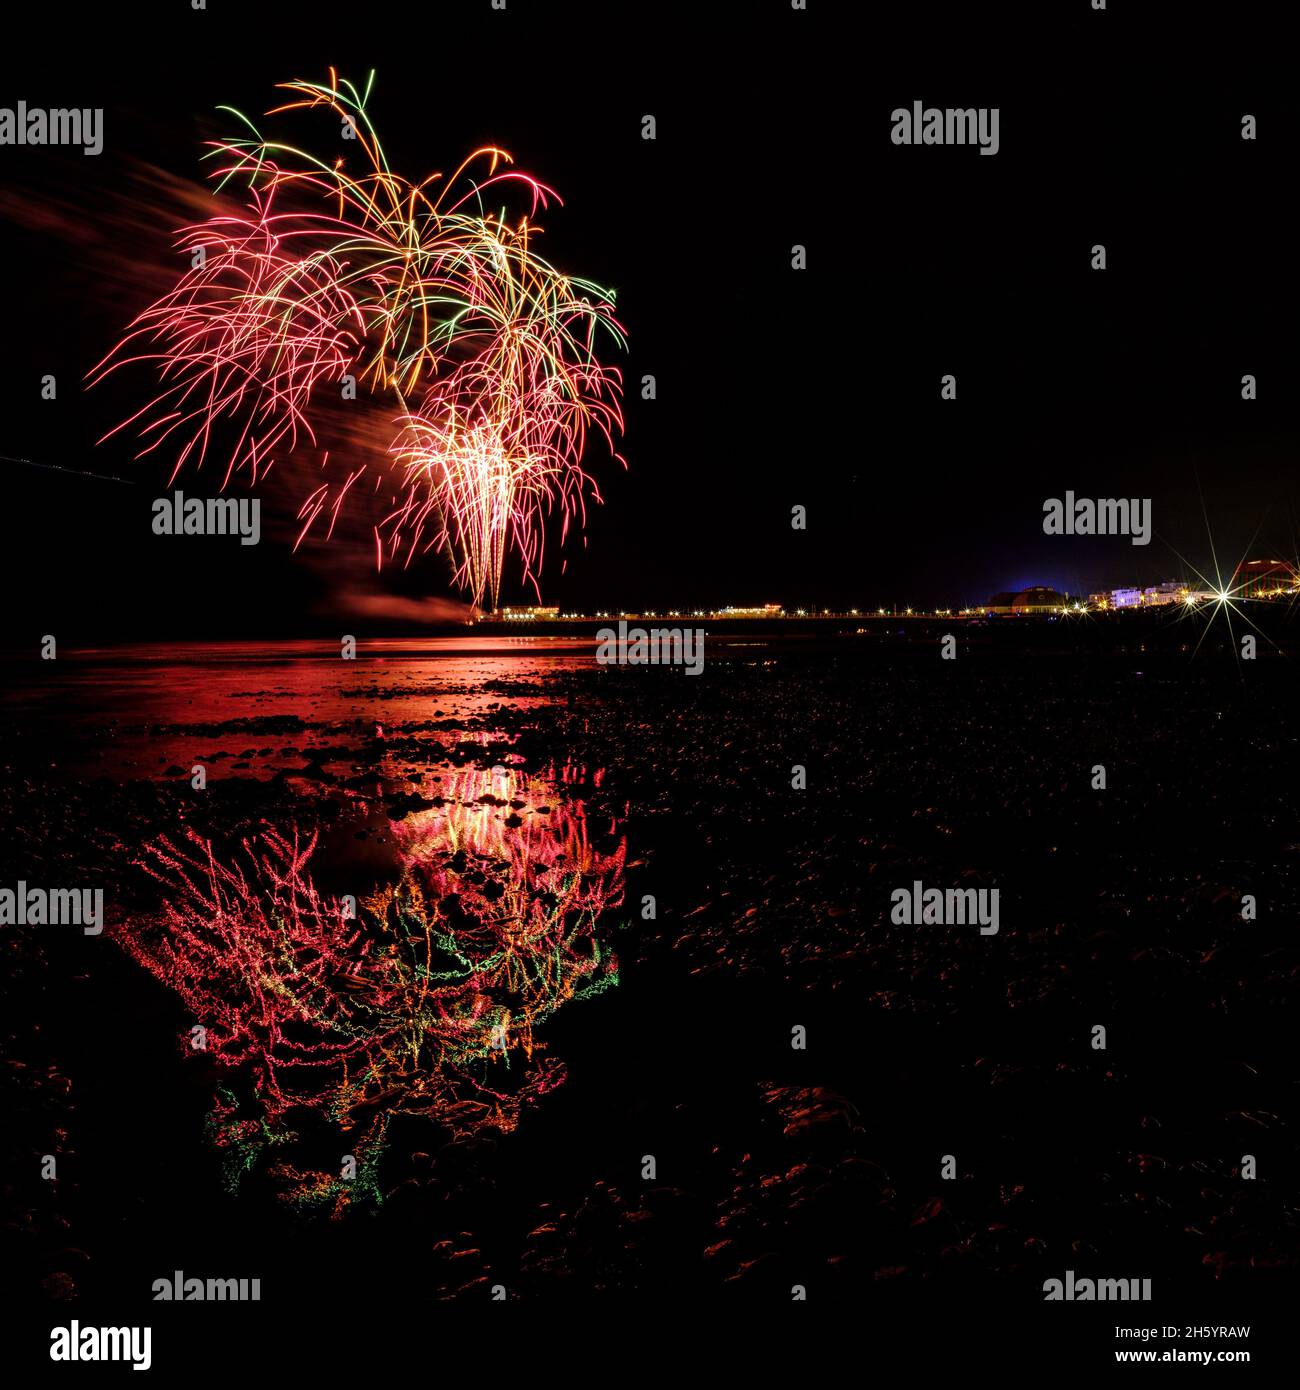 East Beach, Worthing, Reino Unido. 5 de noviembre de 2021. Los fuegos artificiales se encuentran en Worthing Pier y se reflejan en la marea entrante Worthing Lions Fireworks. . Foto de Julie Edwards./Alamy Live News Foto de stock